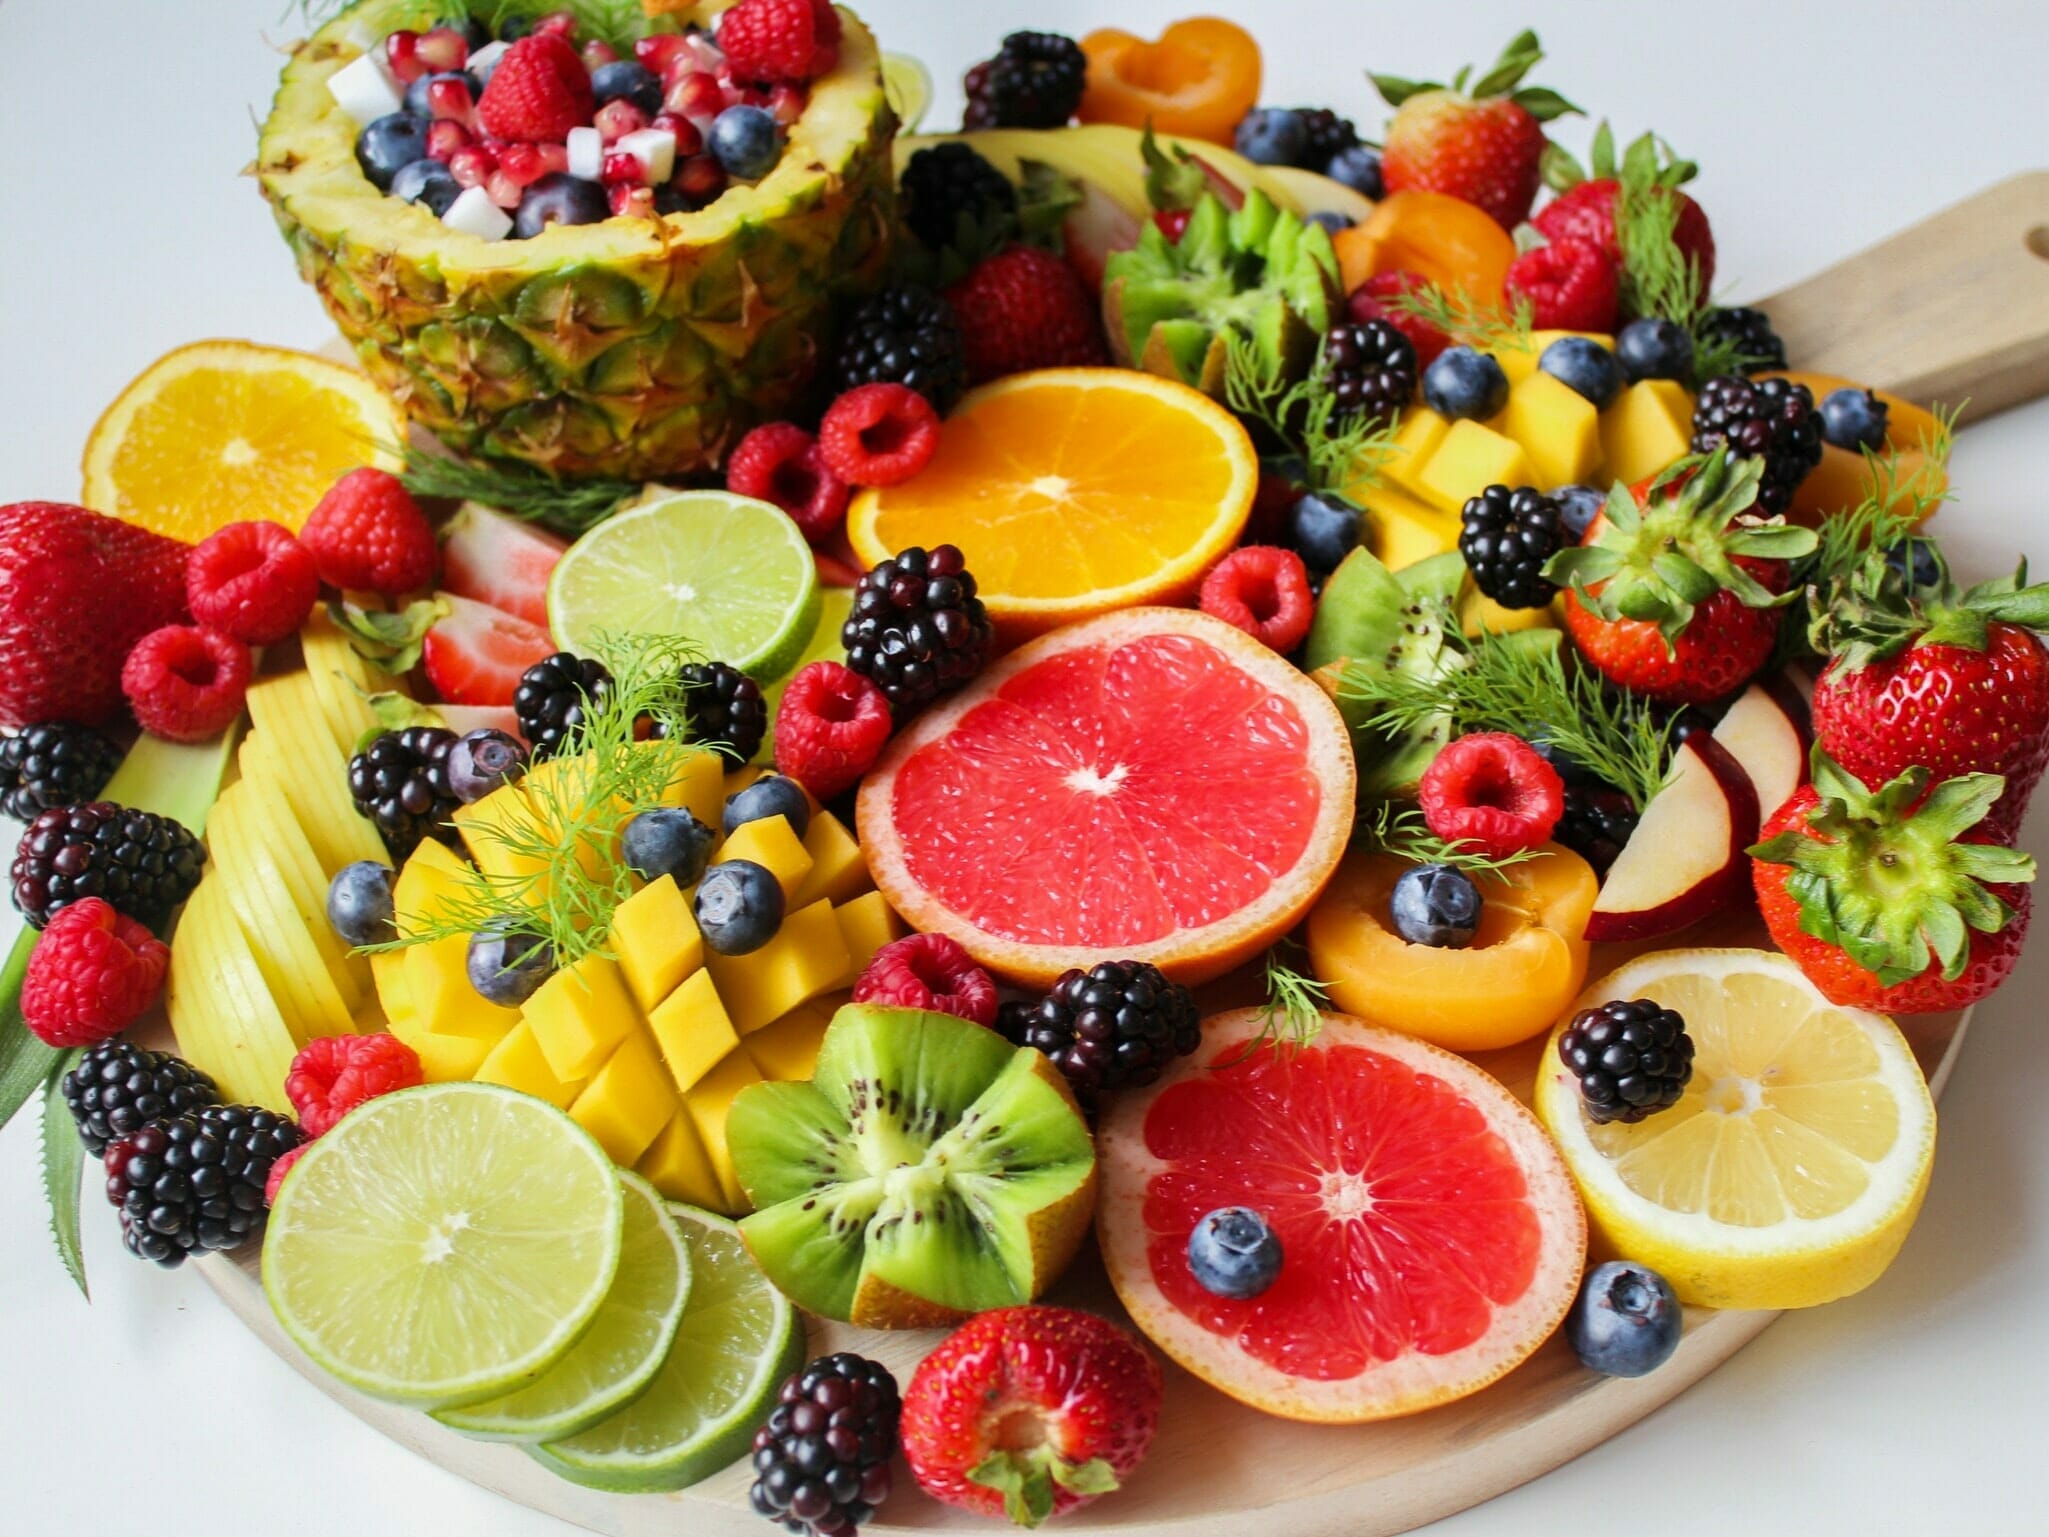 mangiare-frutta-di-stagione-a-colazione:-ecco-il-motivo-che-ti-fa-dire-“wow”!